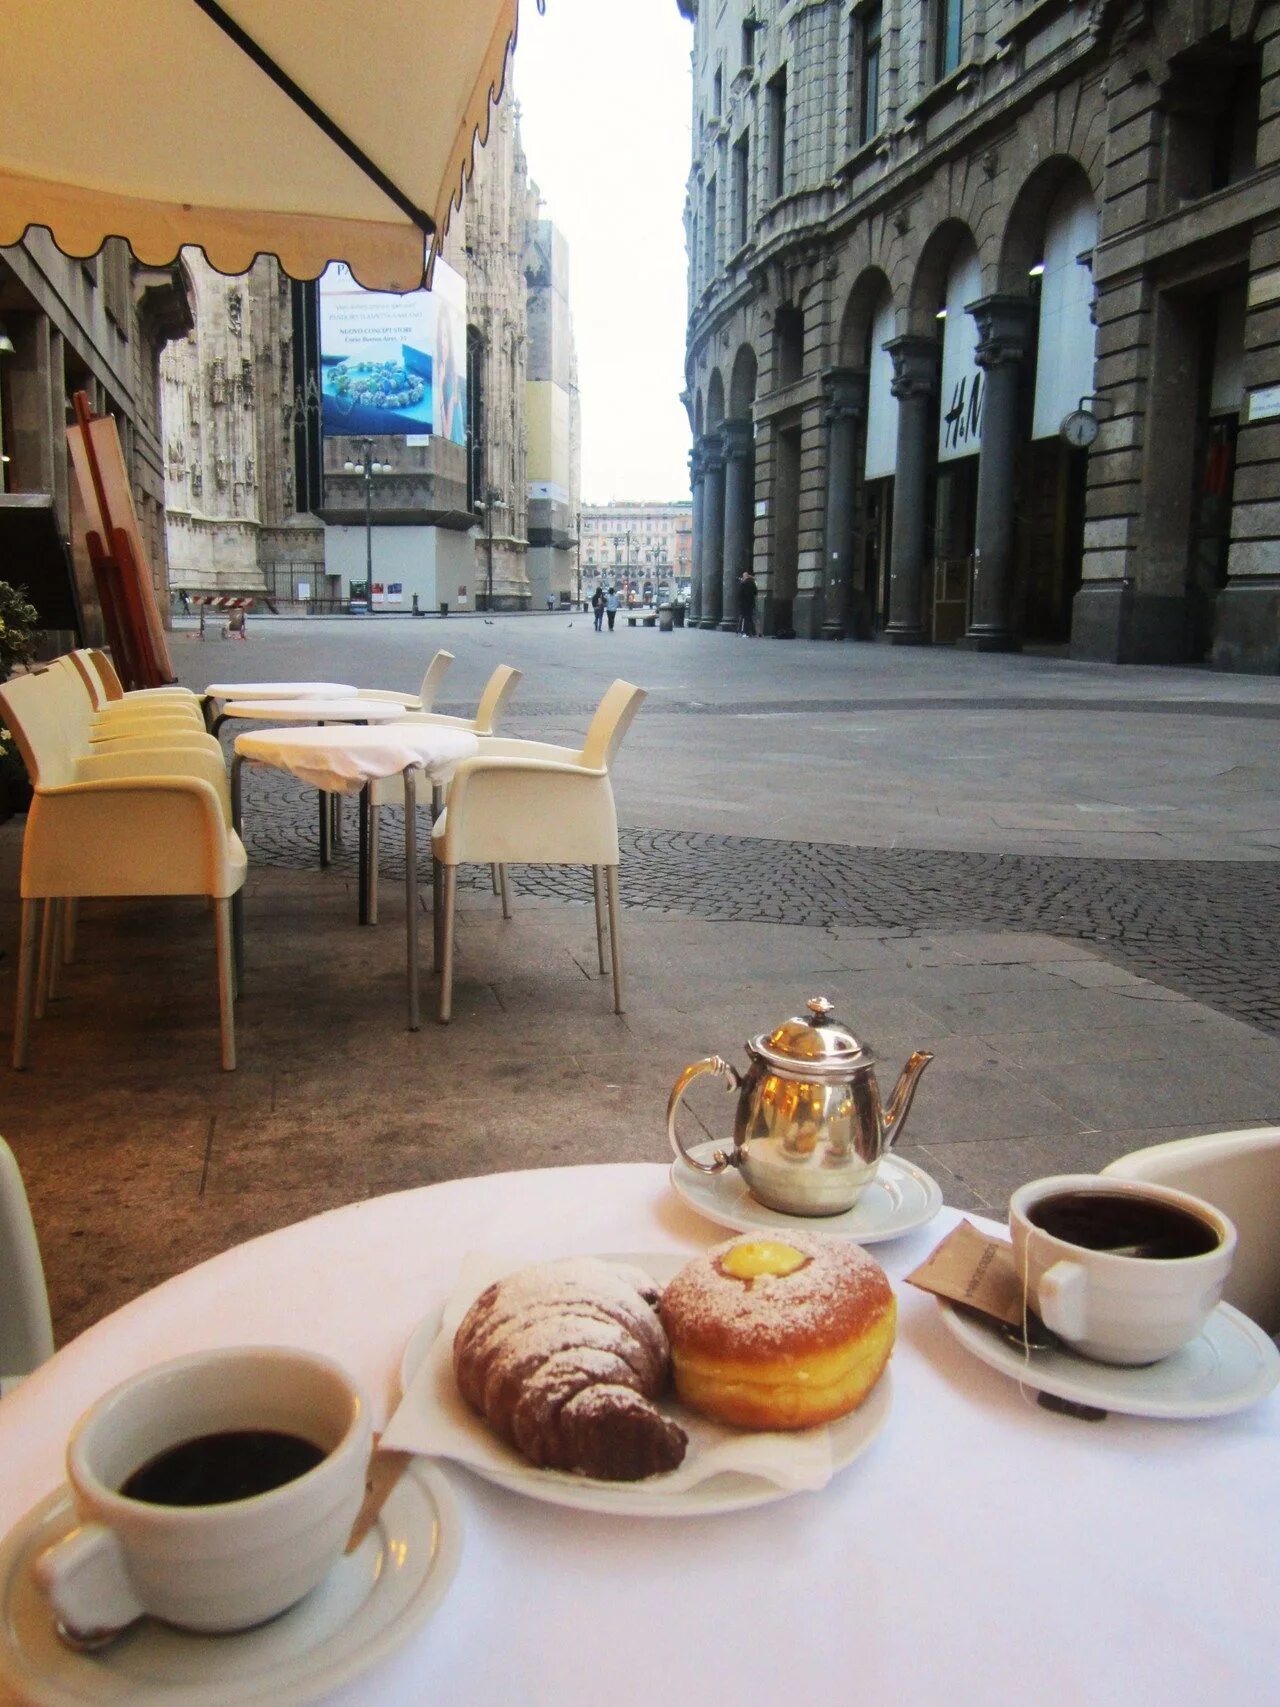 Завтрак. Чашка кофе в кафе на улице. Завтрак с кофе. Завтрак в Италии. Завтрак в летнем кафе